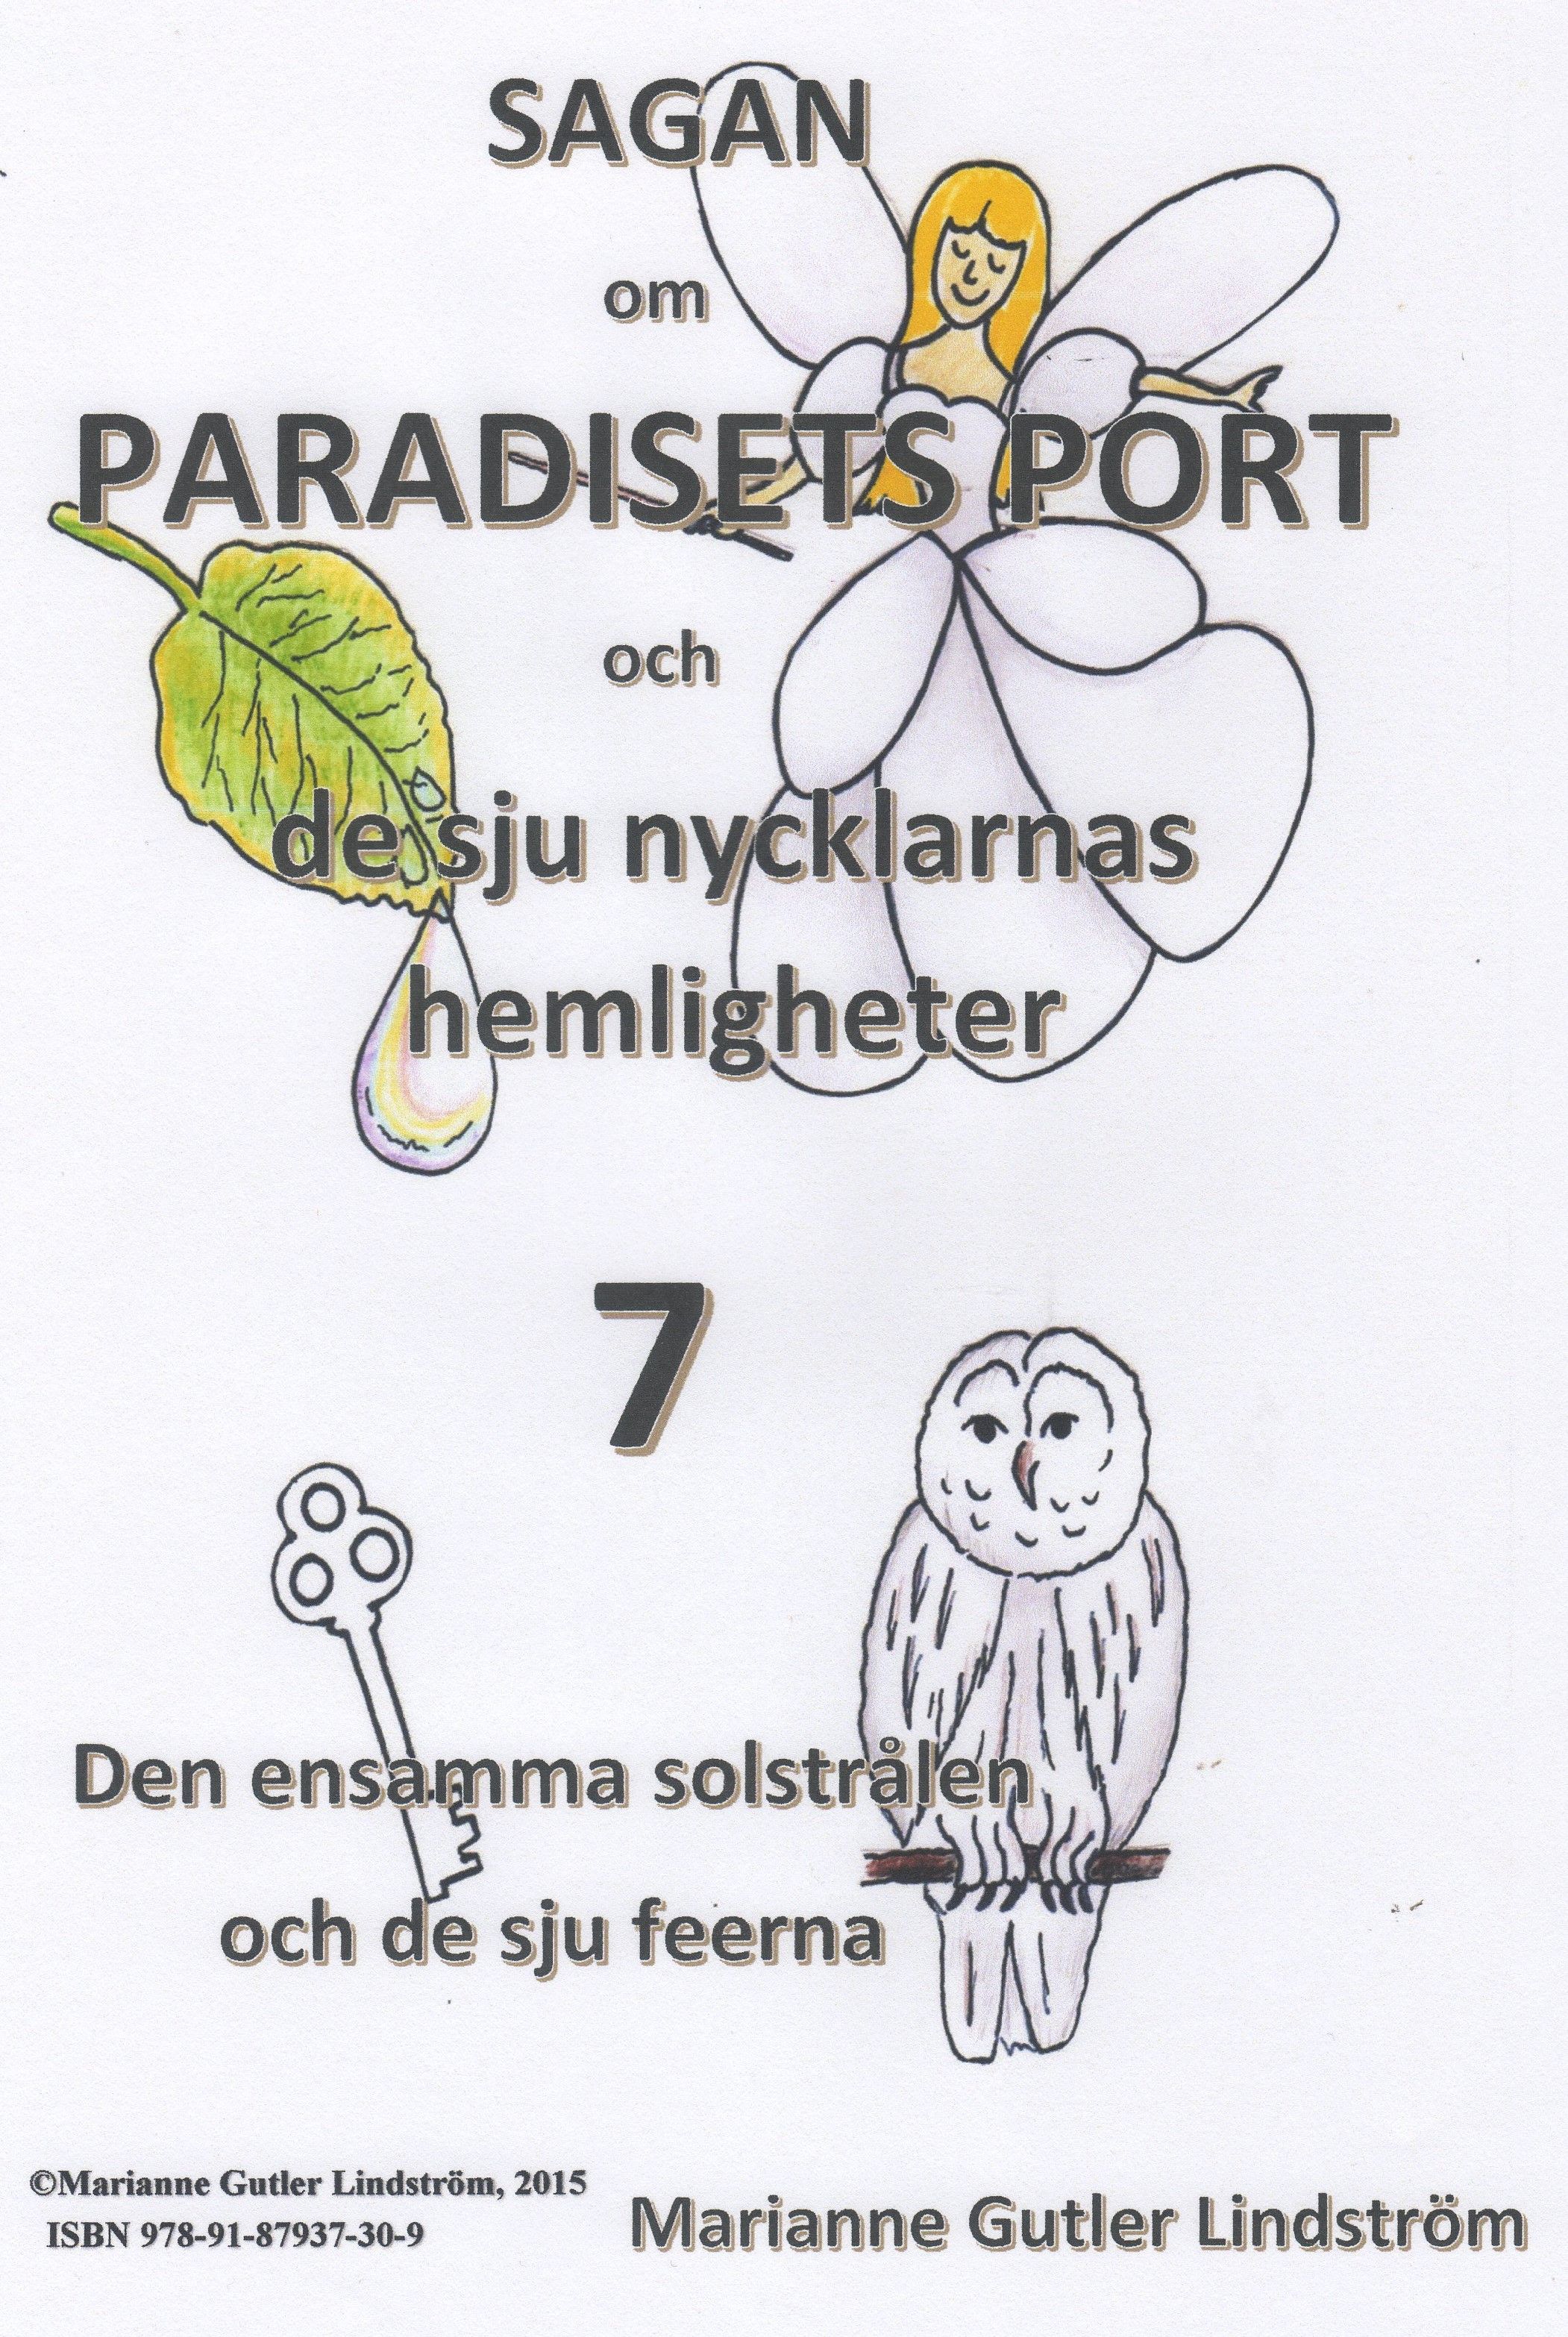 Sagan om Paradisets Port 7  Den ensamma solstrålen och de sju feerna, e-bok av Marianne Gutler Lindström